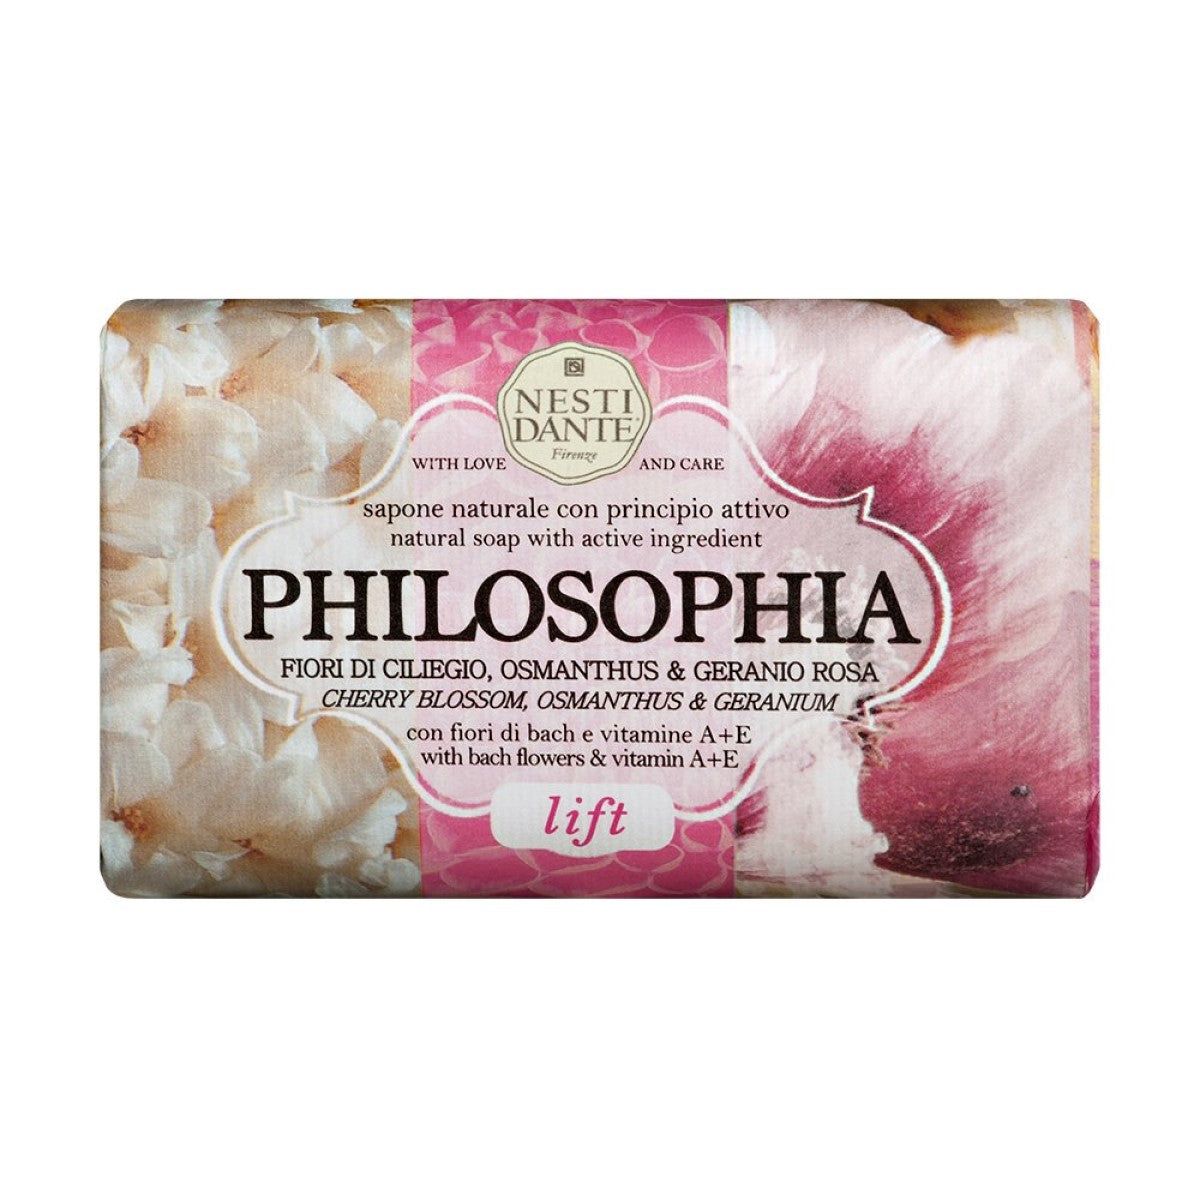 Primary Image of Philosophia Lift Soap